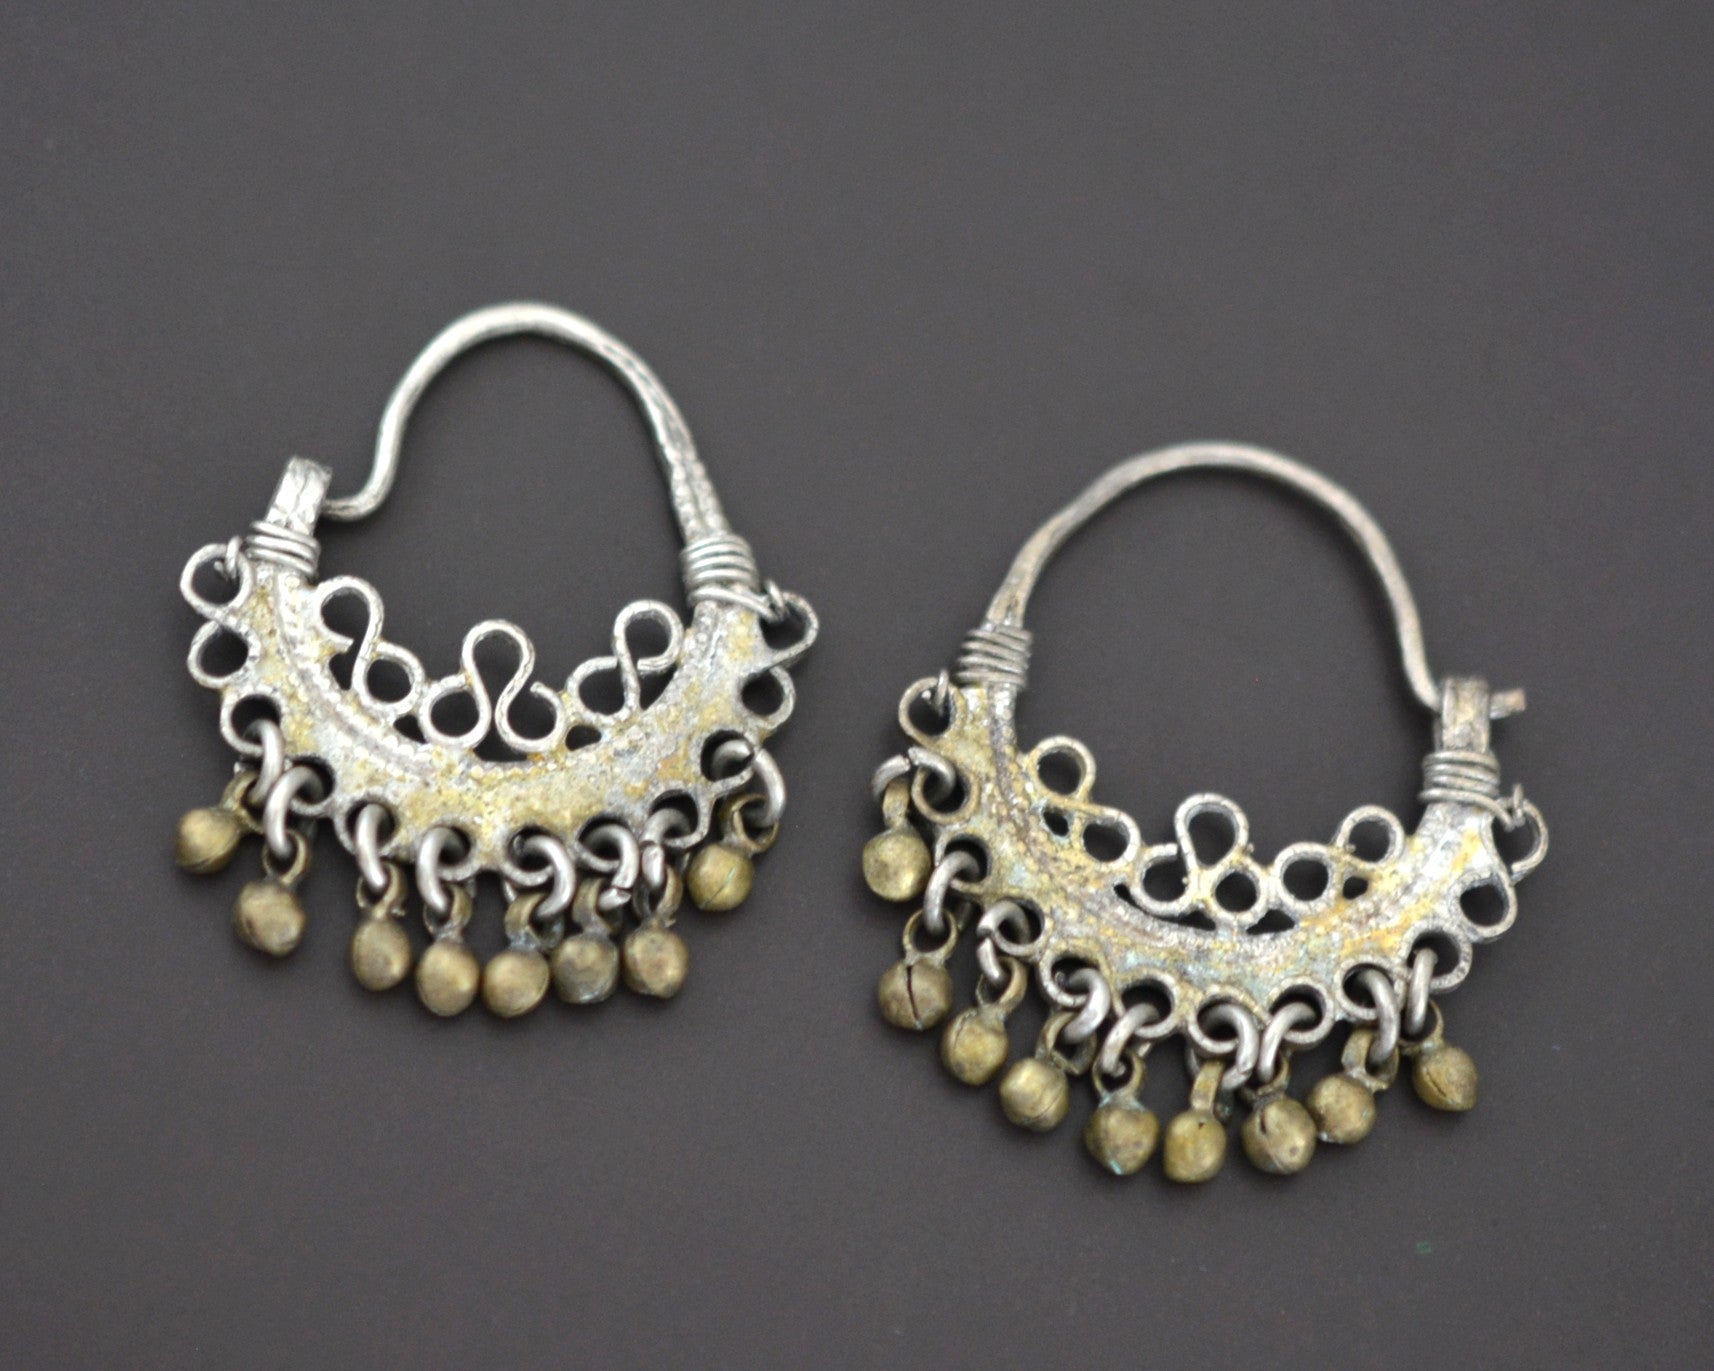 Afghani Hoop Earrings with Bells - SMALL